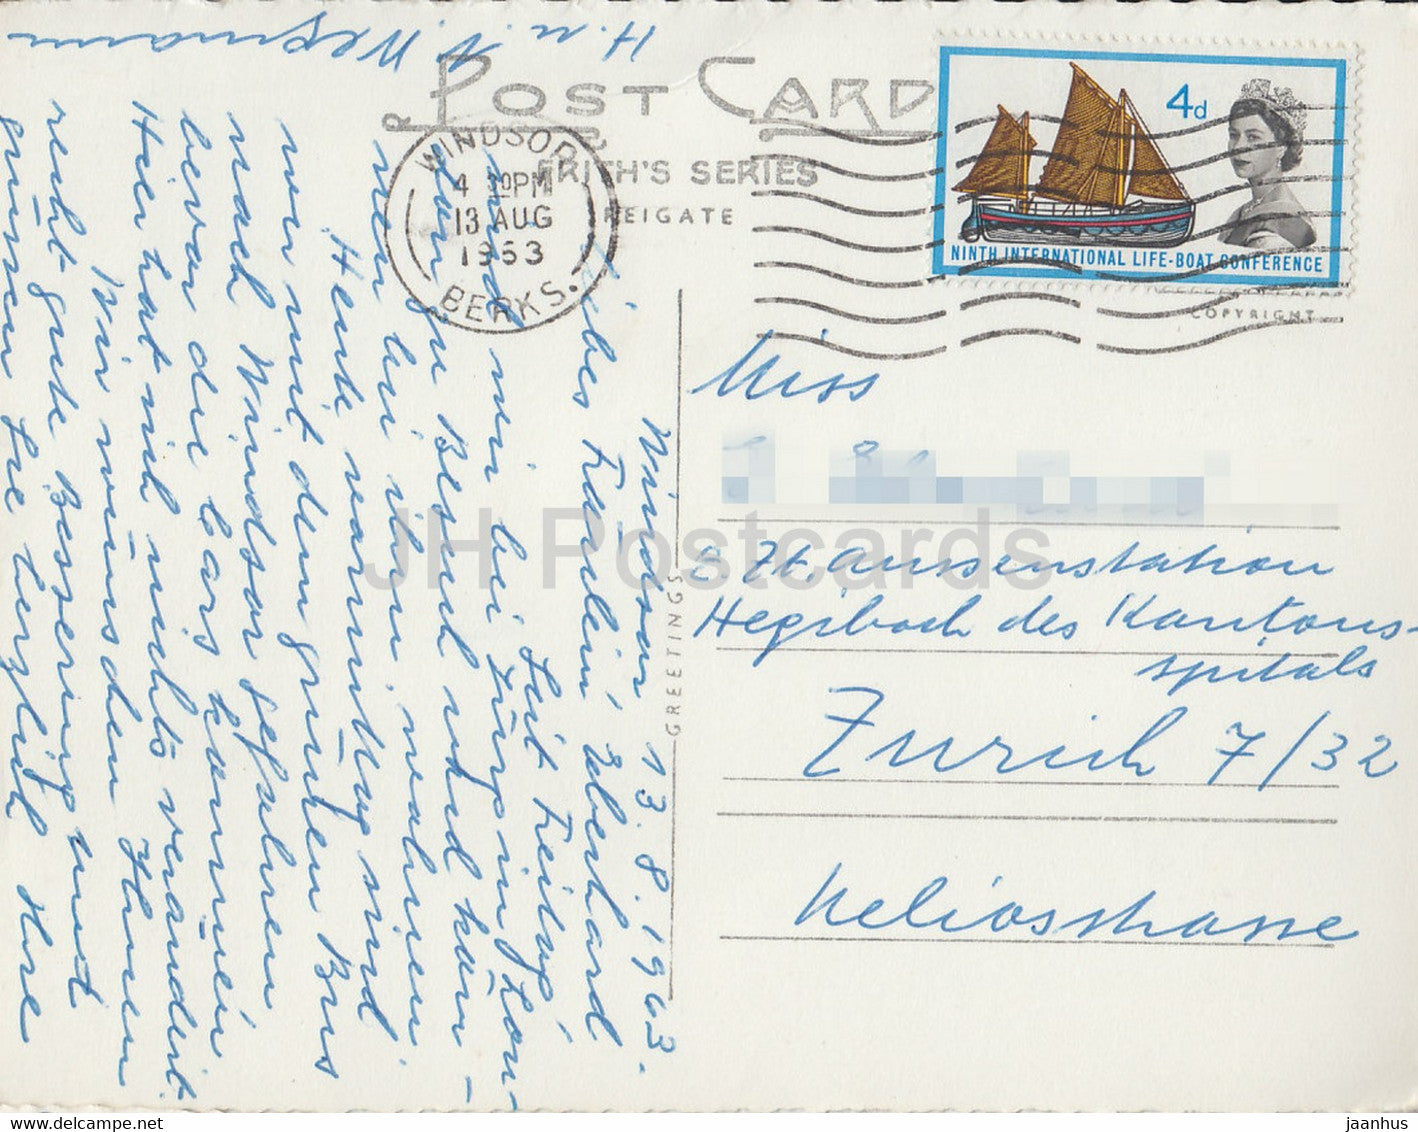 Château de Windsor depuis la rivière - 35374 - carte postale ancienne - 1953 - Angleterre - Royaume-Uni - utilisé